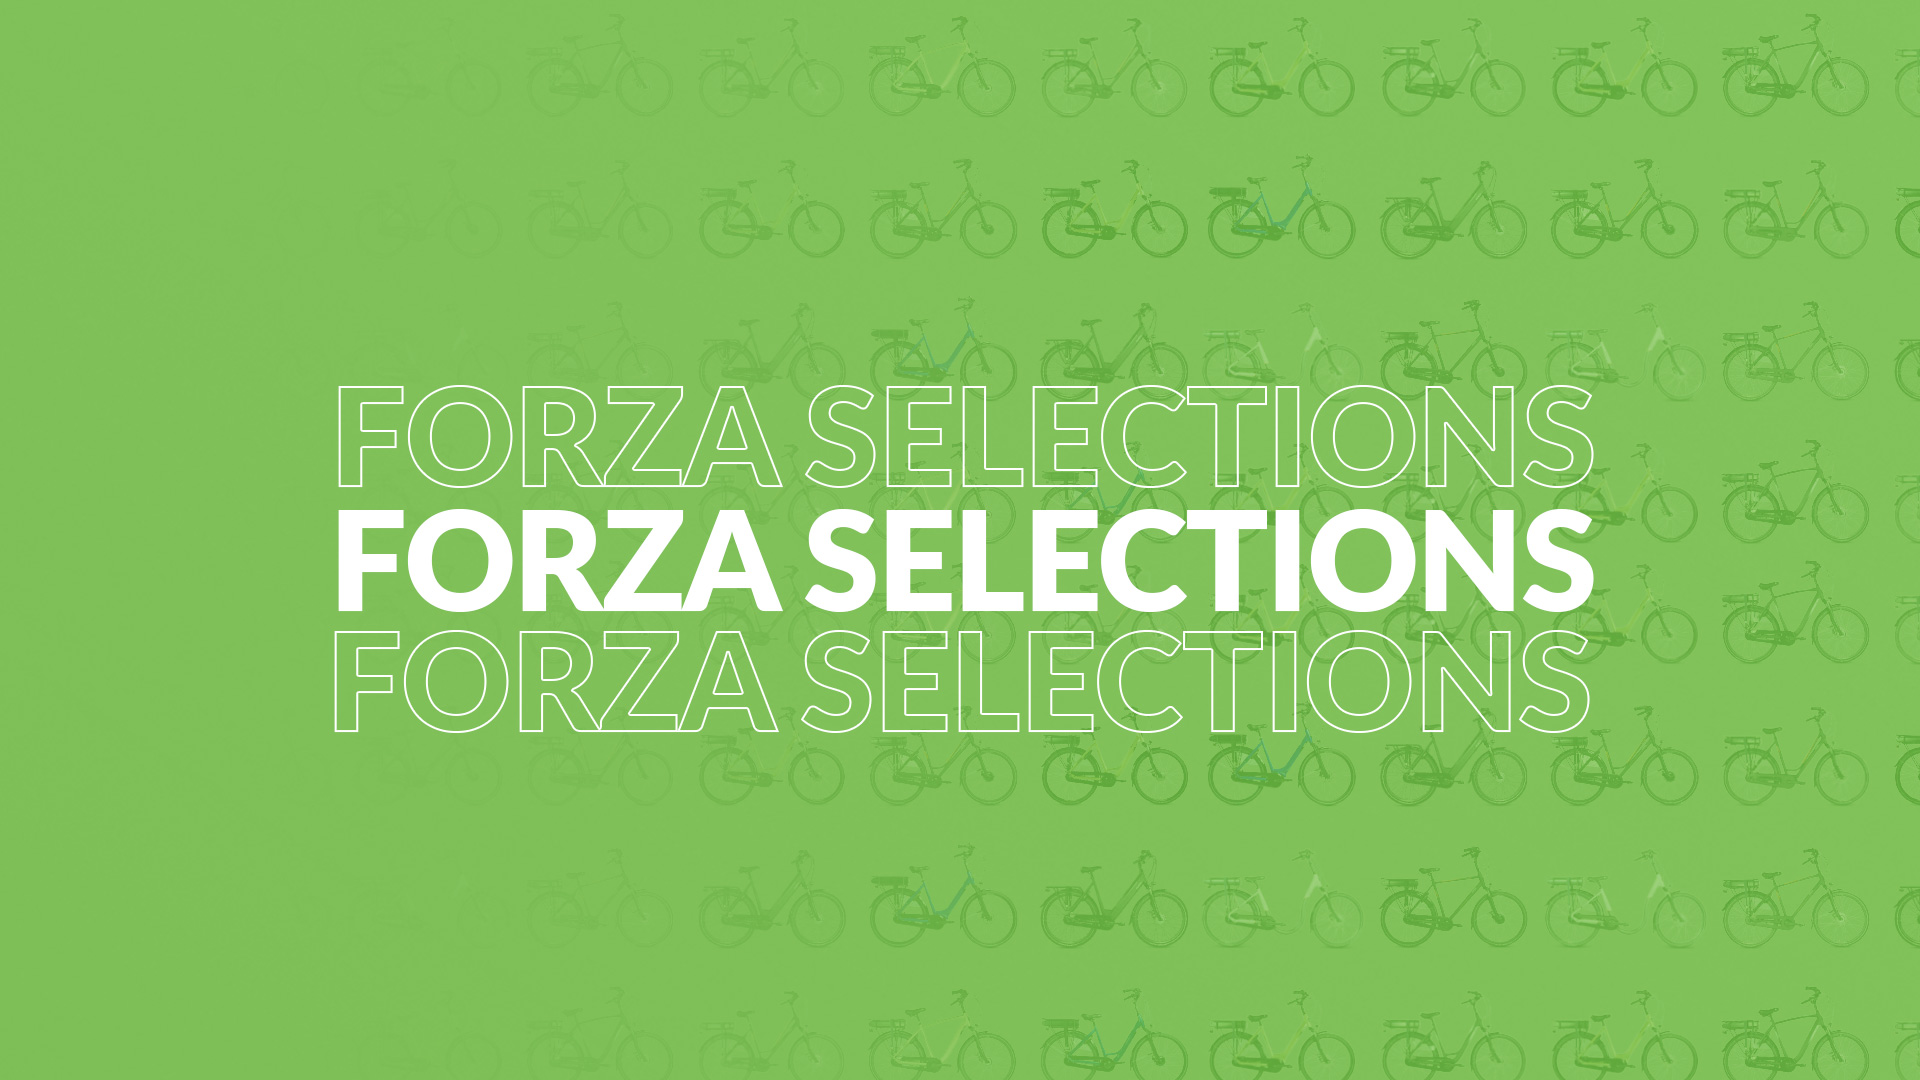 Ontdek de e-bike voor jouw stijl en budget met de Forza Selections!